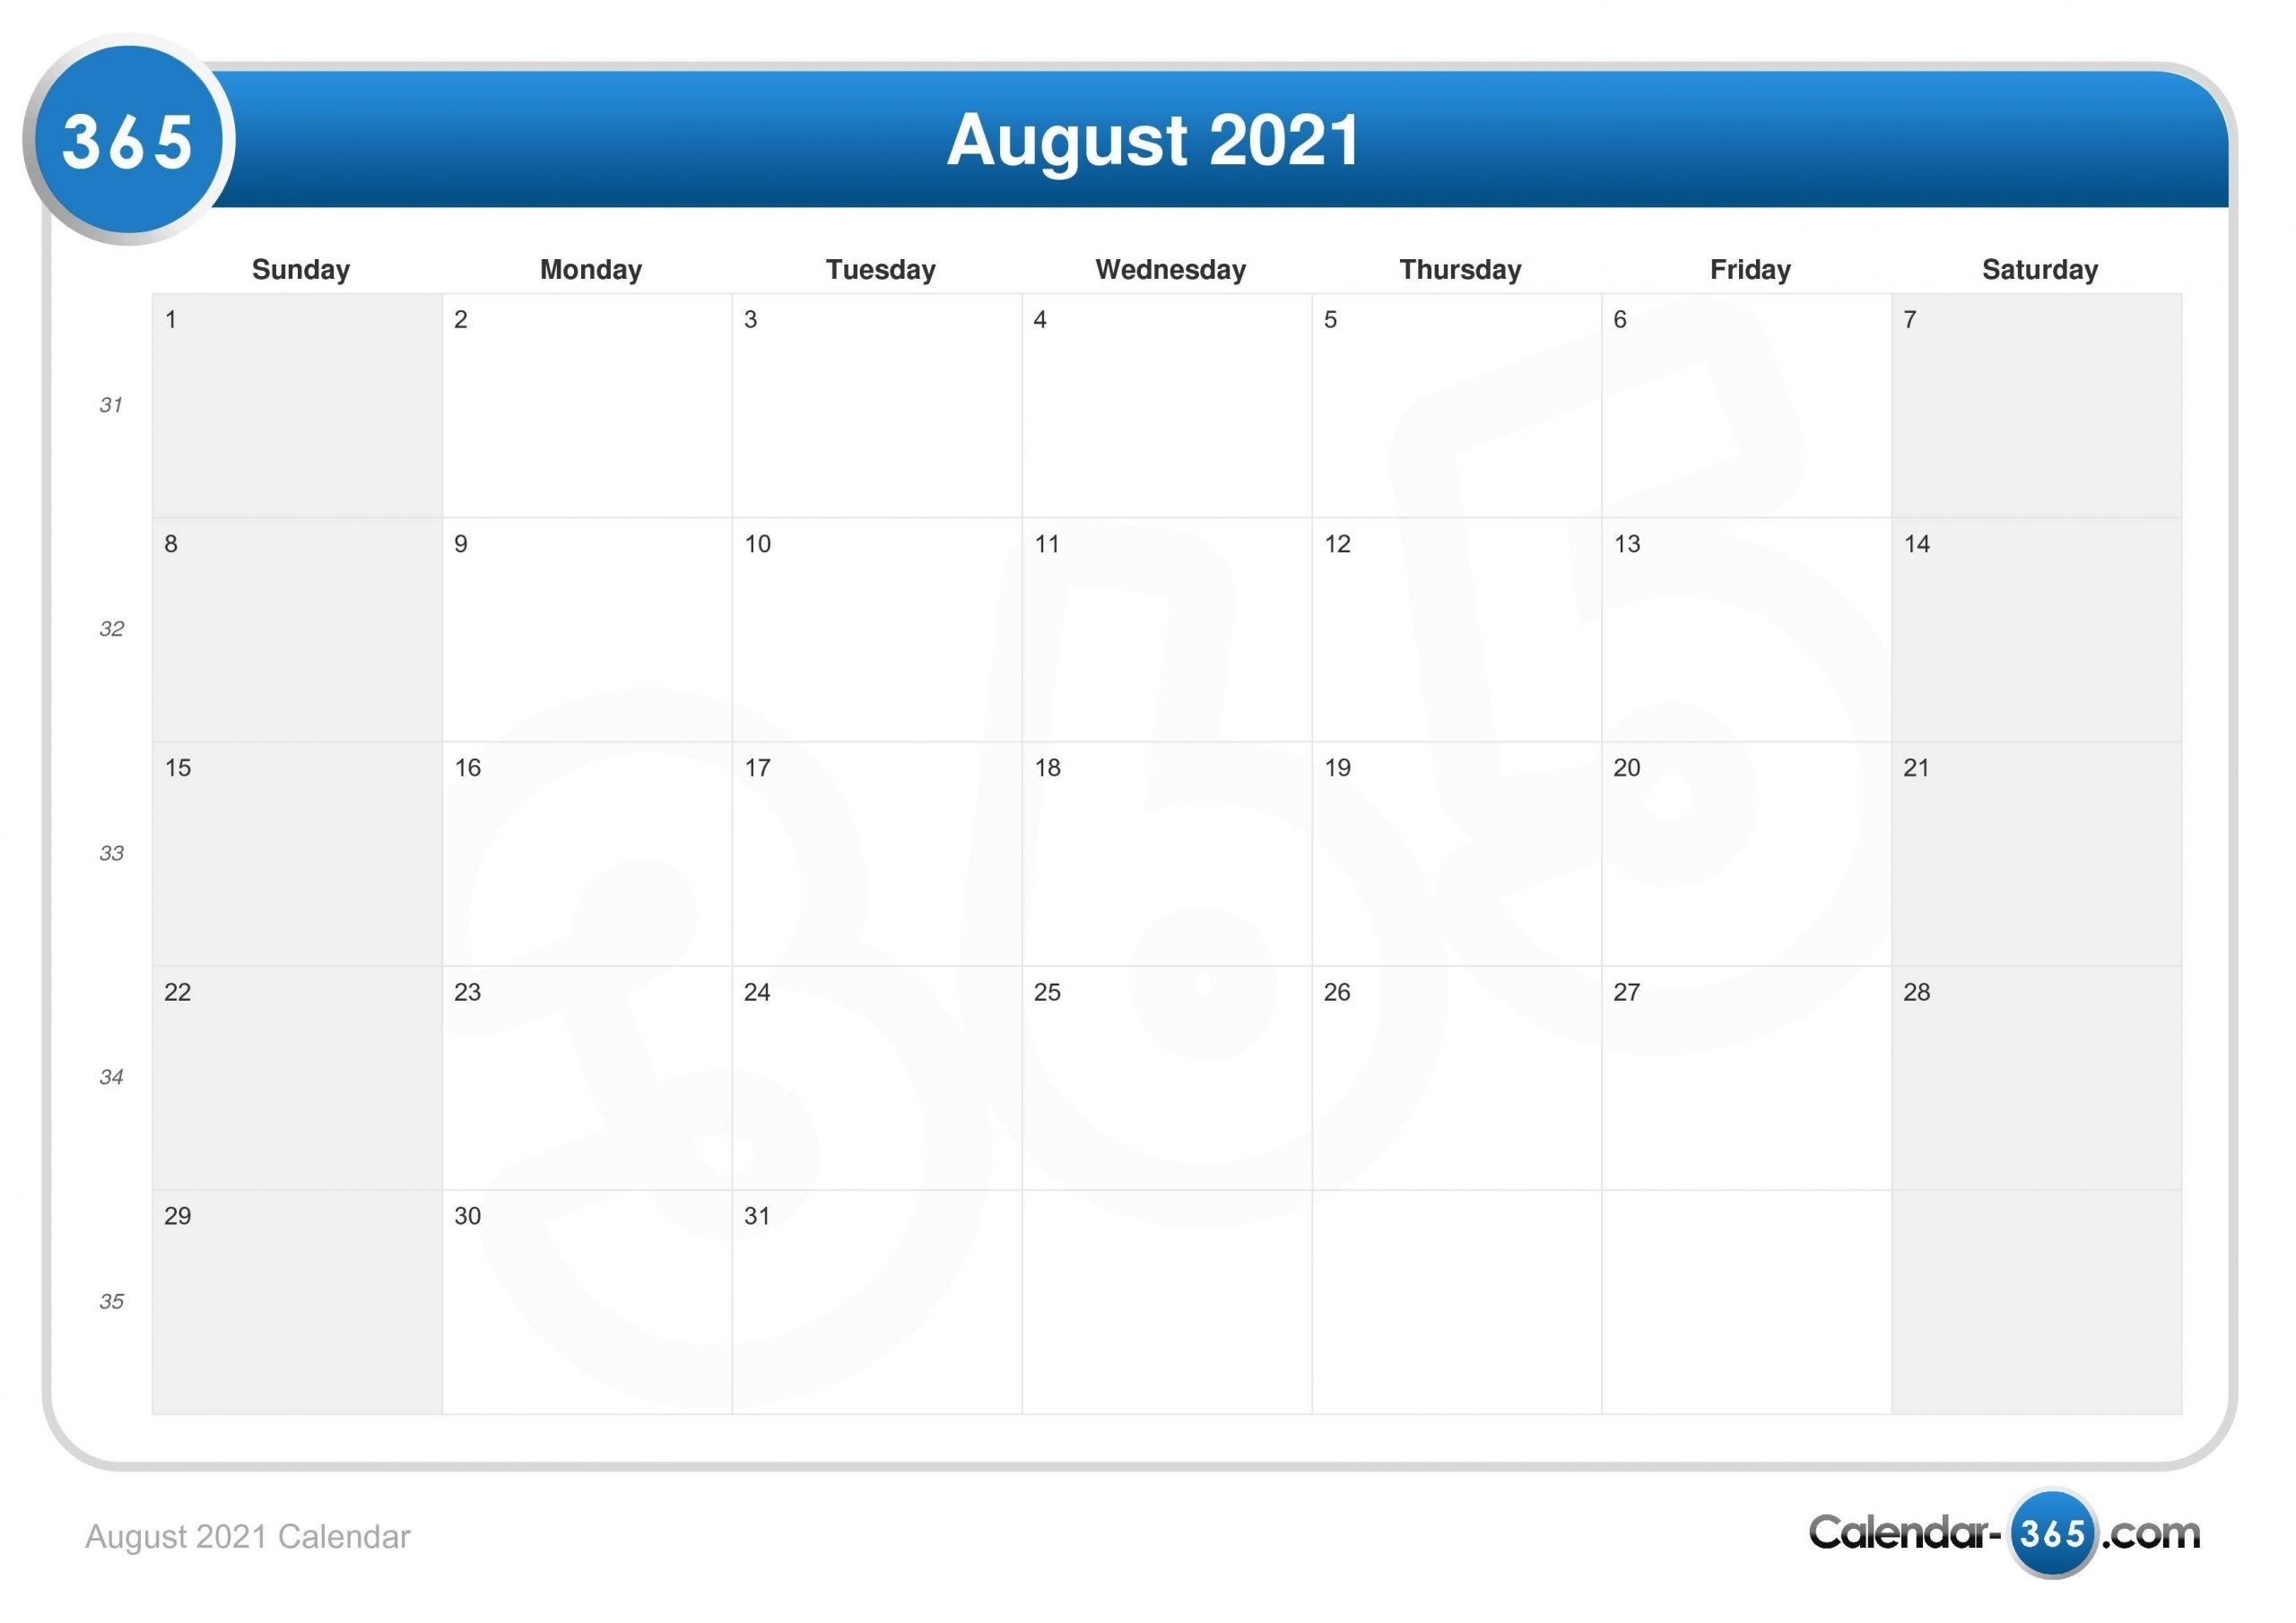 Catch August 2021 Calendar